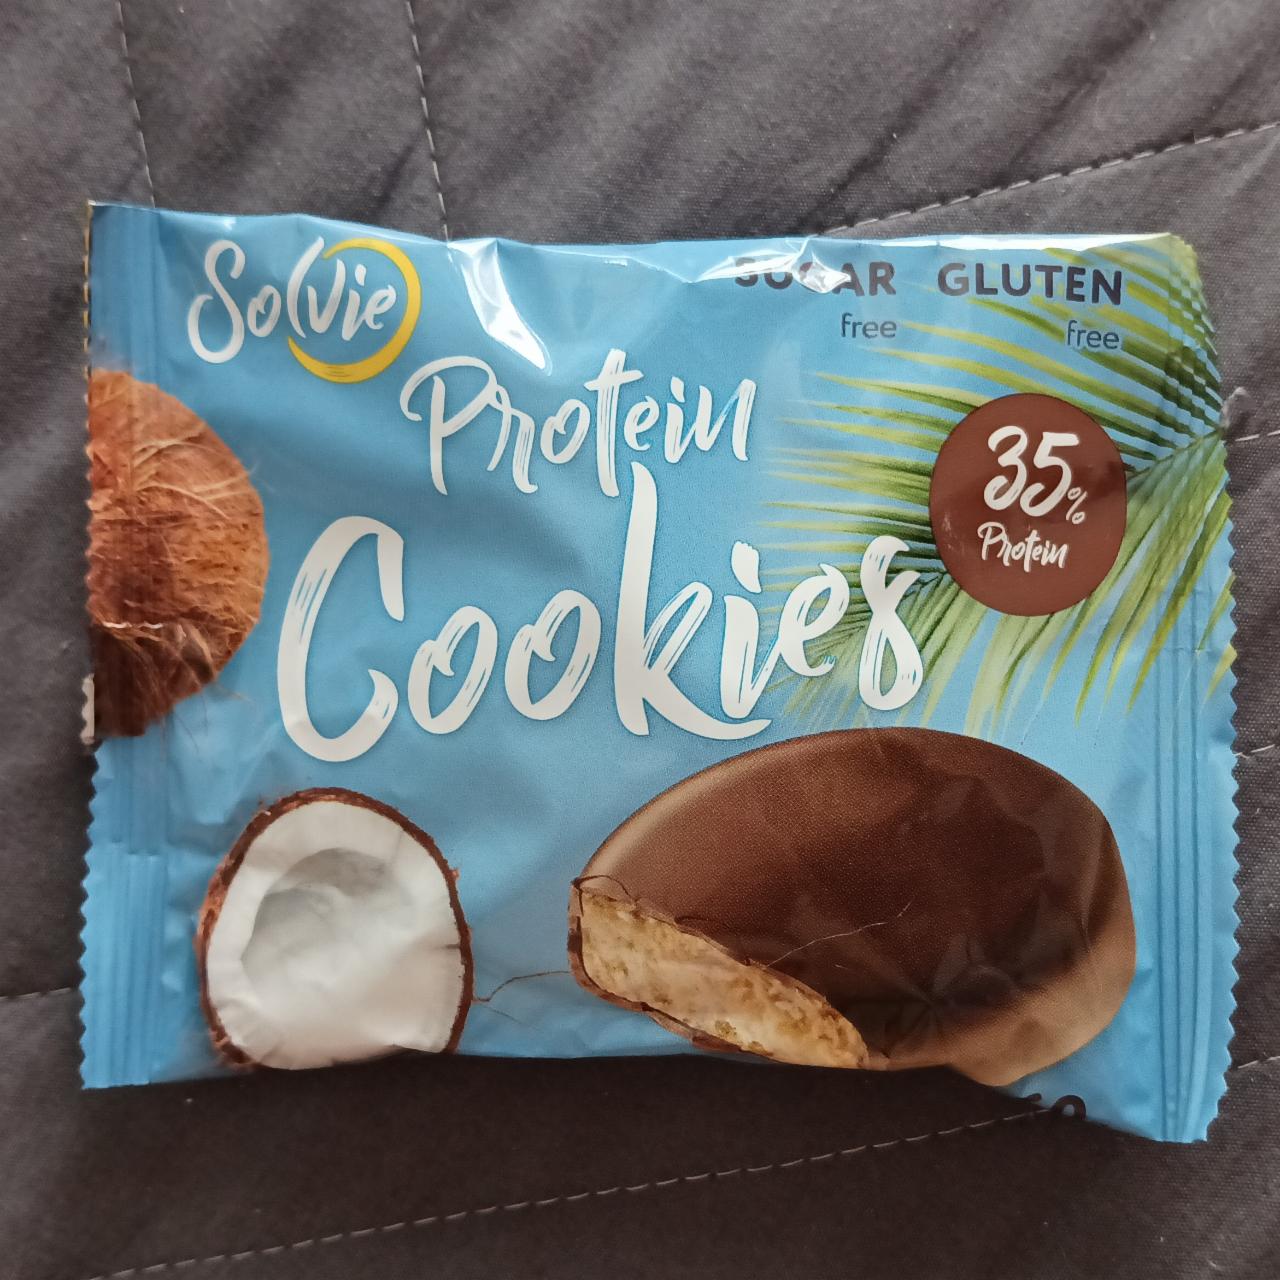 Фото - Печенье Protein cookies протеиновое кокосовое с кокосовой стружкой, глазированное молочным шоколадом, без сахара Solvie